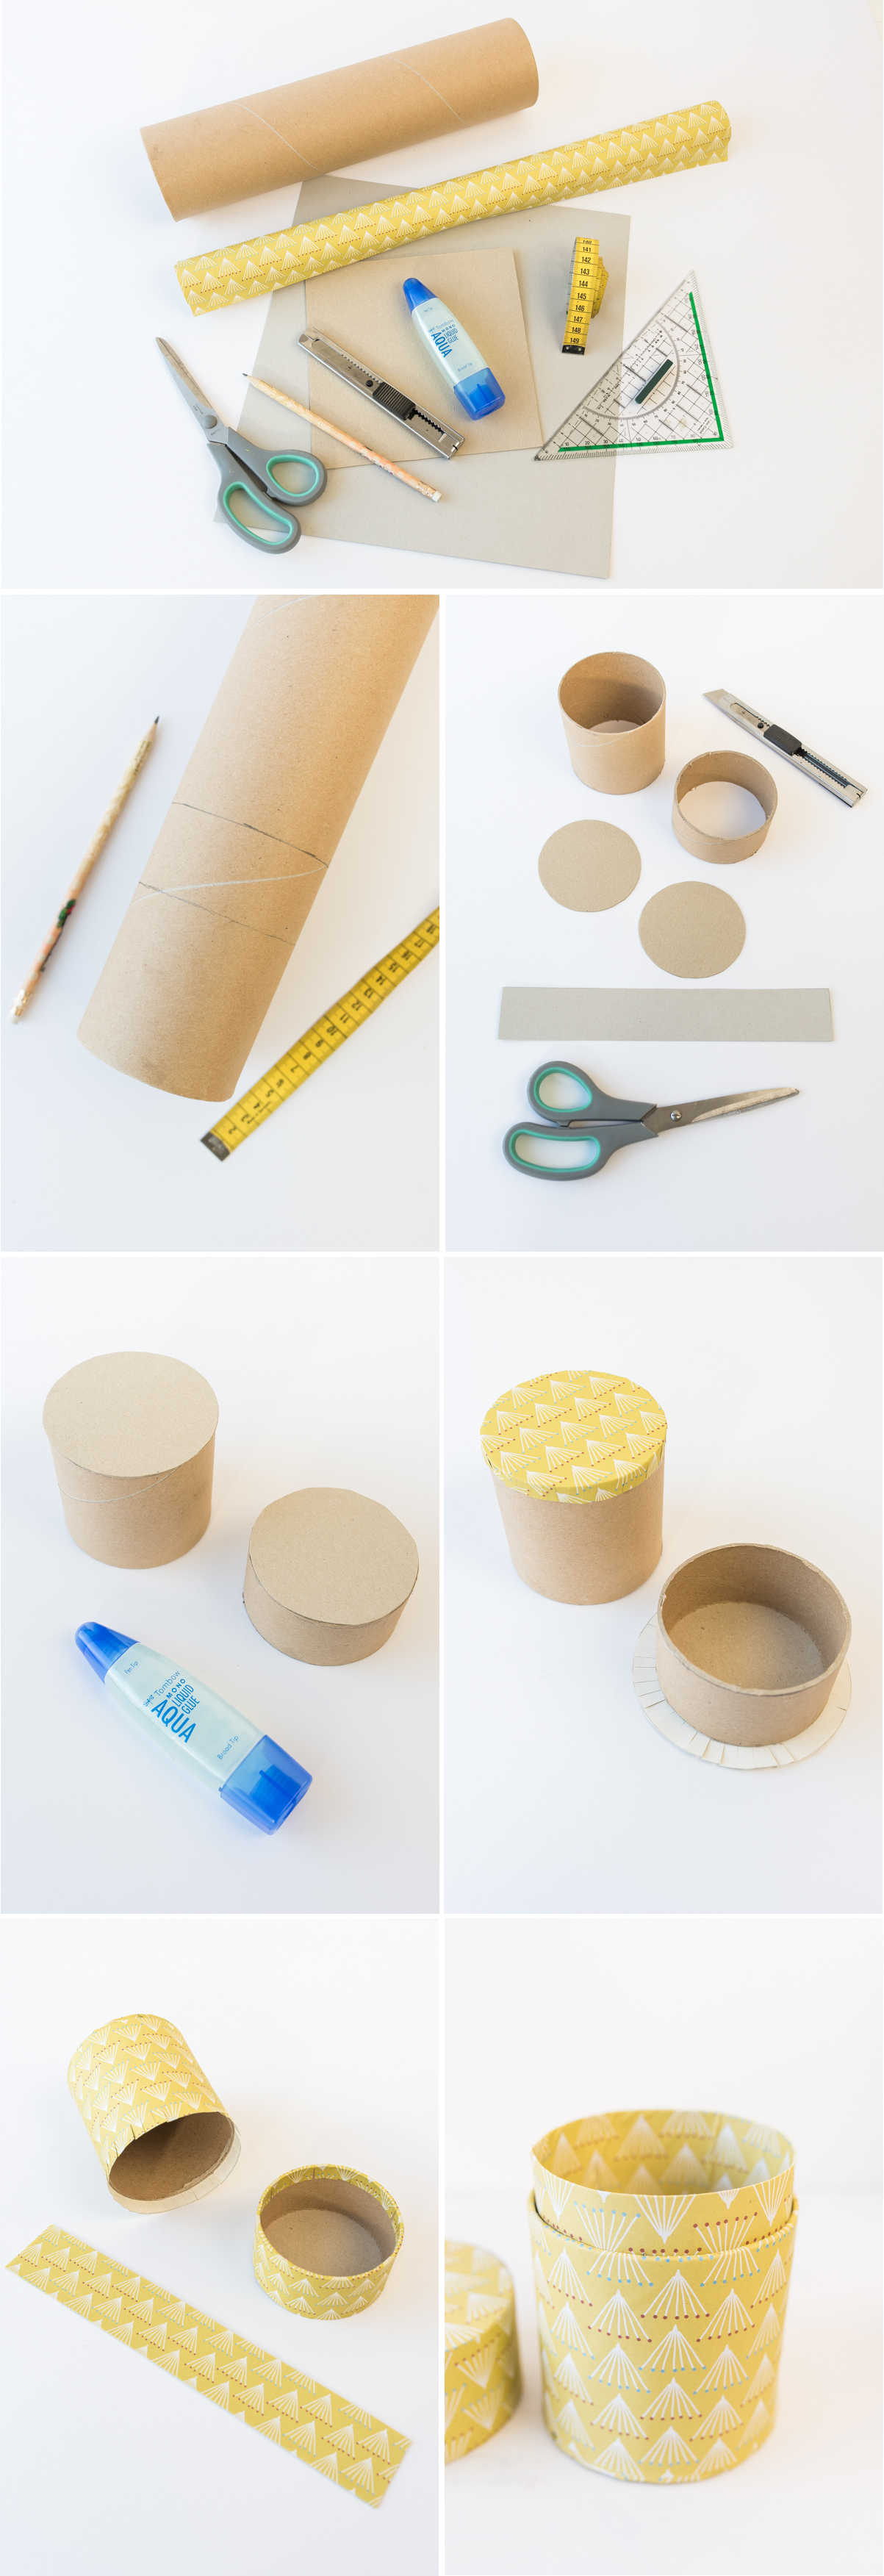 Anleitung für selbst gemachte DIY upcycling Dosen aus Papierrollen als Aufbewahrung und Deko für das Büro